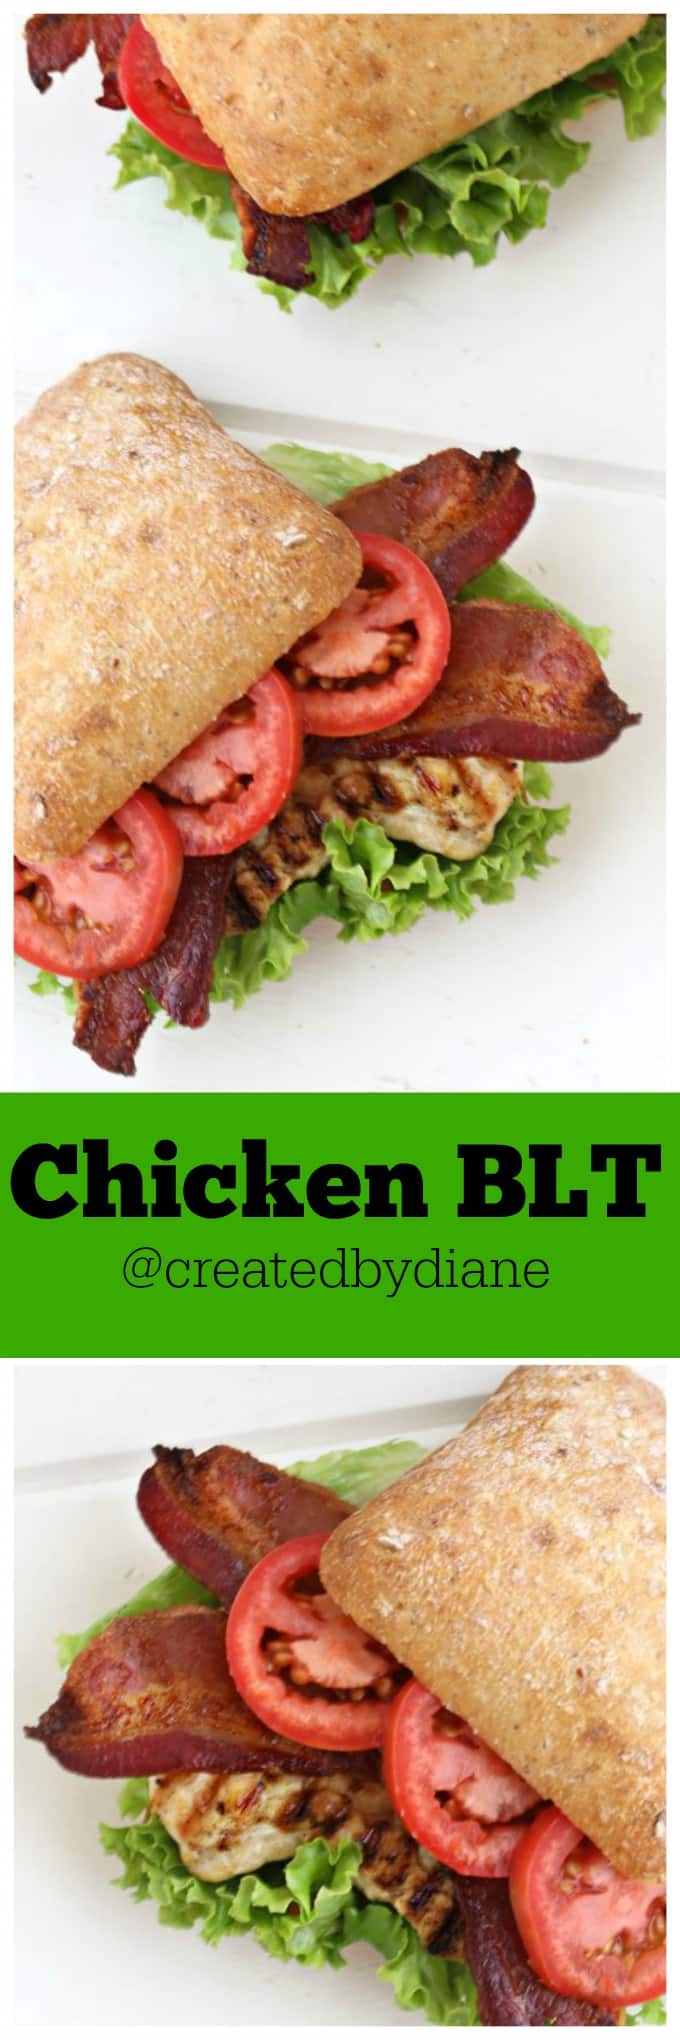 Chicken BLT @createdbydiane